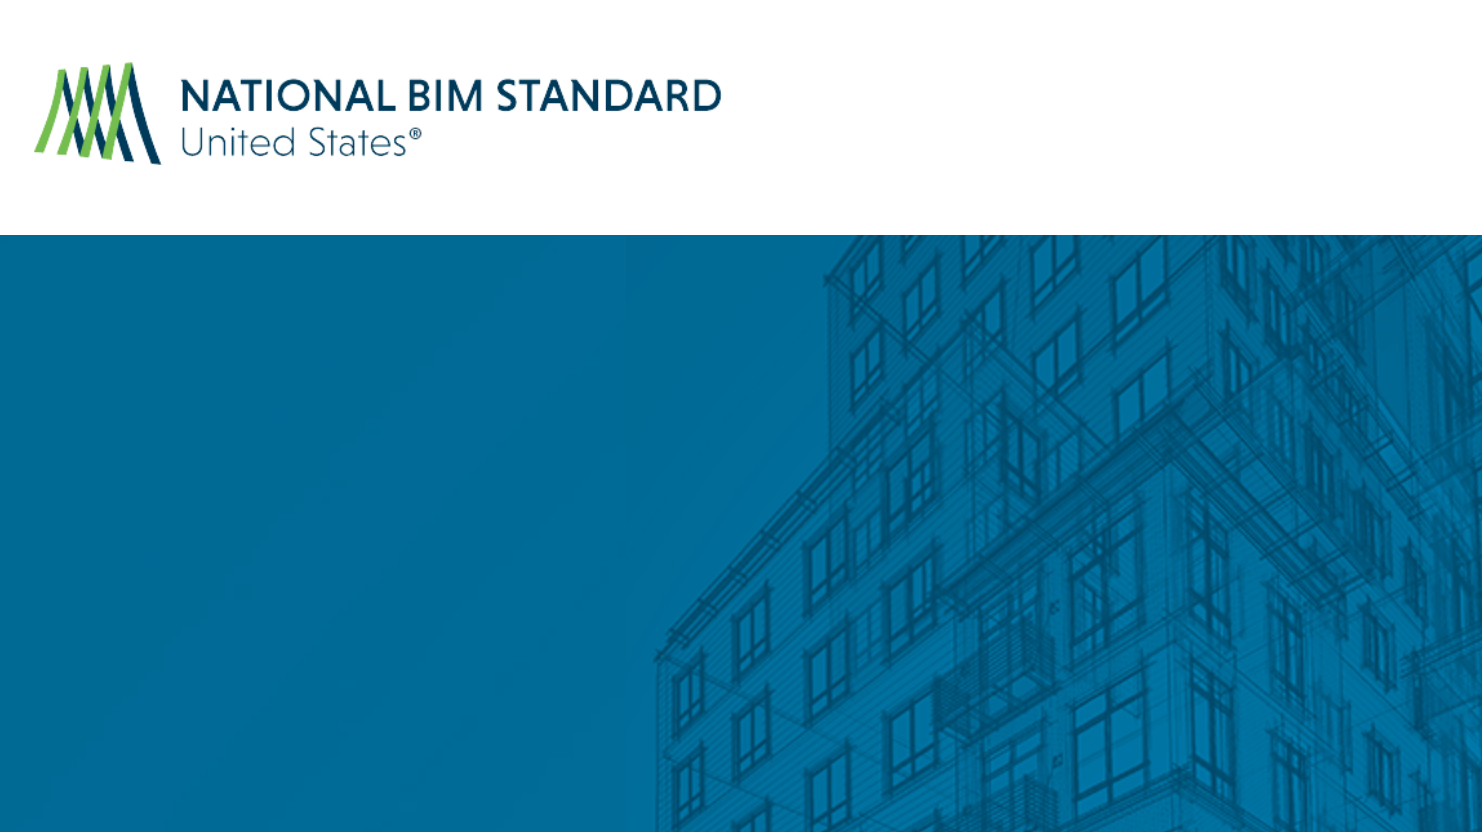 BIM Council seeks public comments on BIM Standard-US Version 4